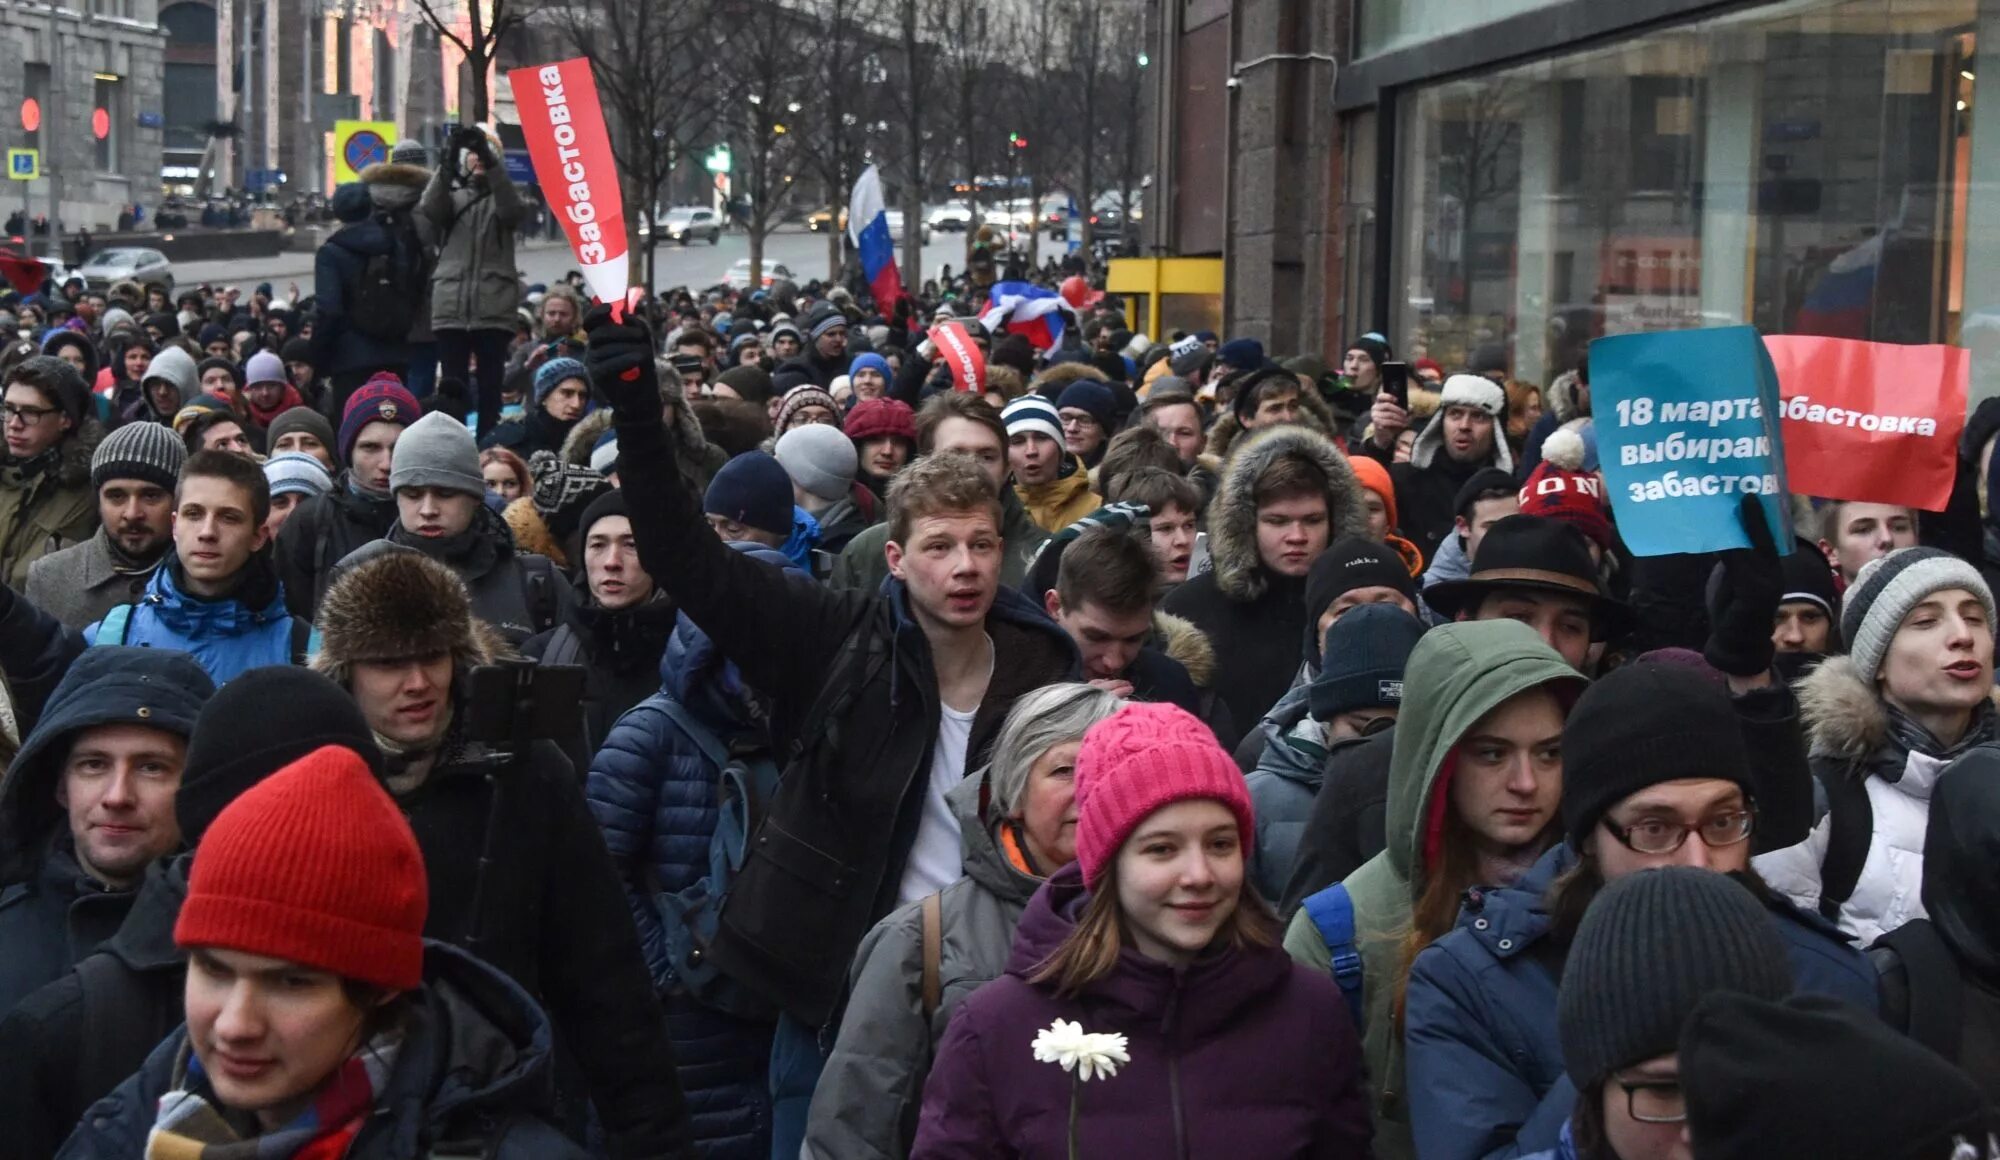 Школьники на митинге. Митинг подростков. Малыши на митинге. Подростки на митинге Навального. Митинг на английском